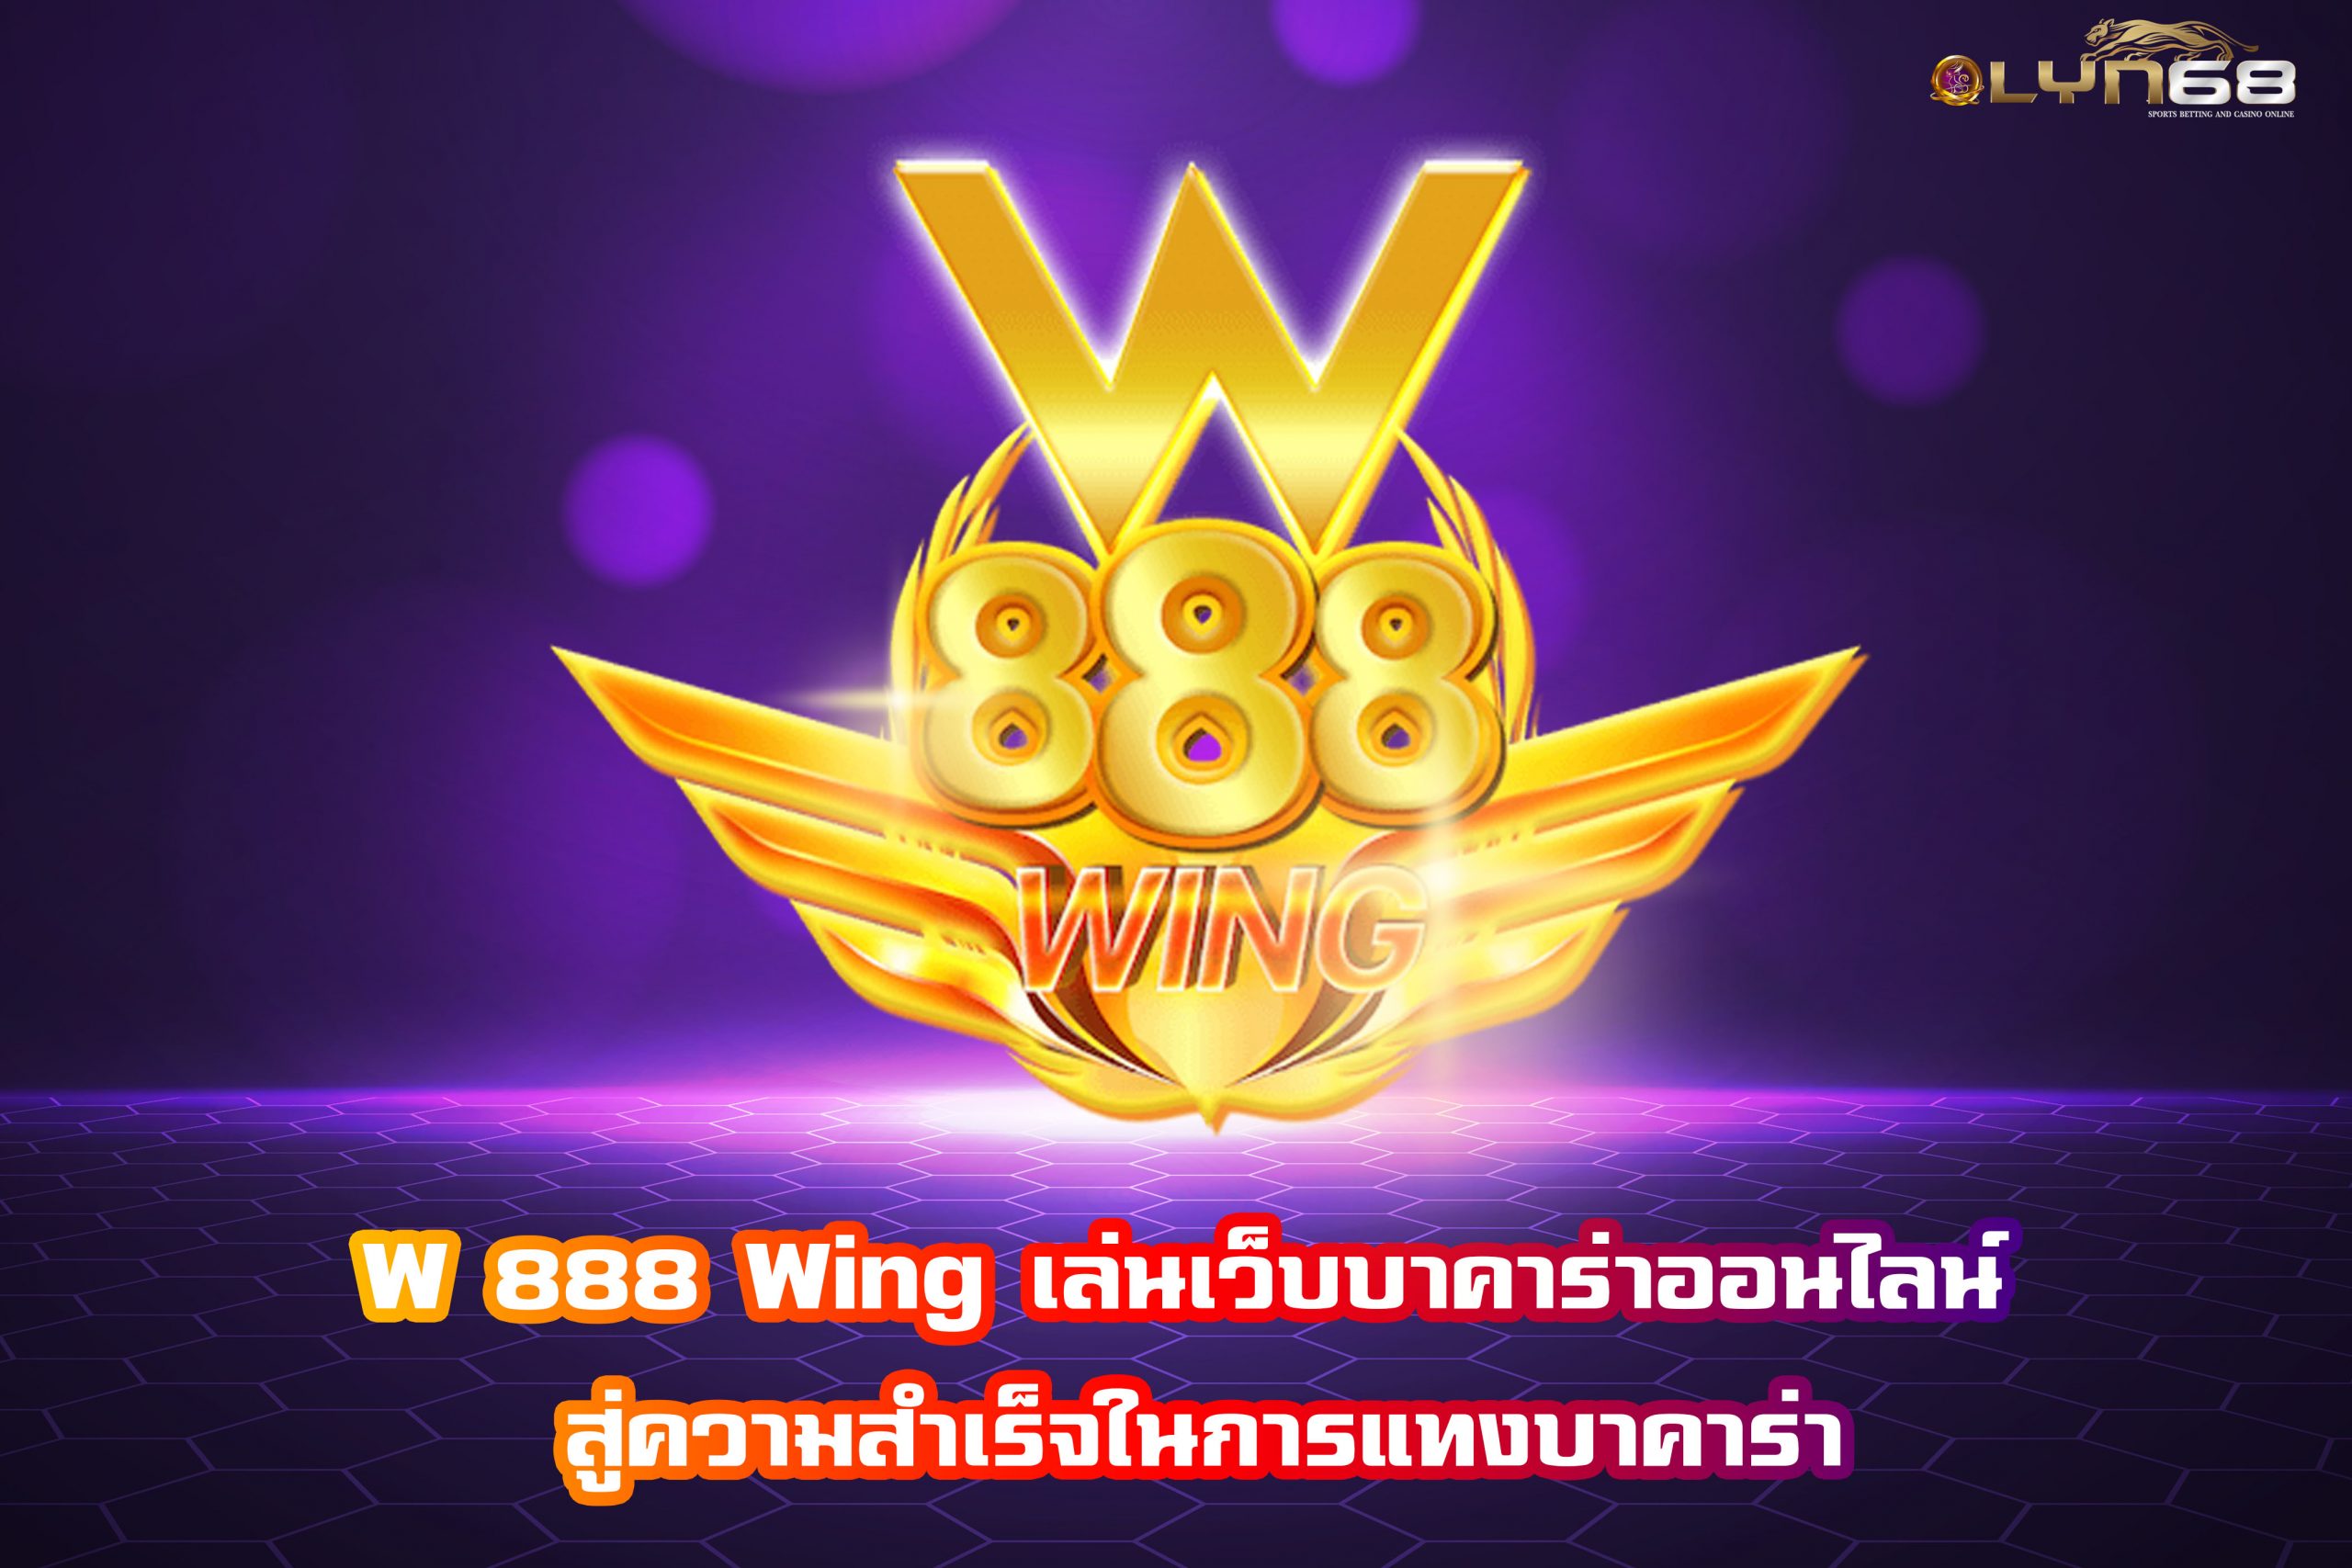 W 888 Wing เล่นเว็บบาคาร่าออนไลน์ สู่ความสำเร็จในการแทงบาคาร่า